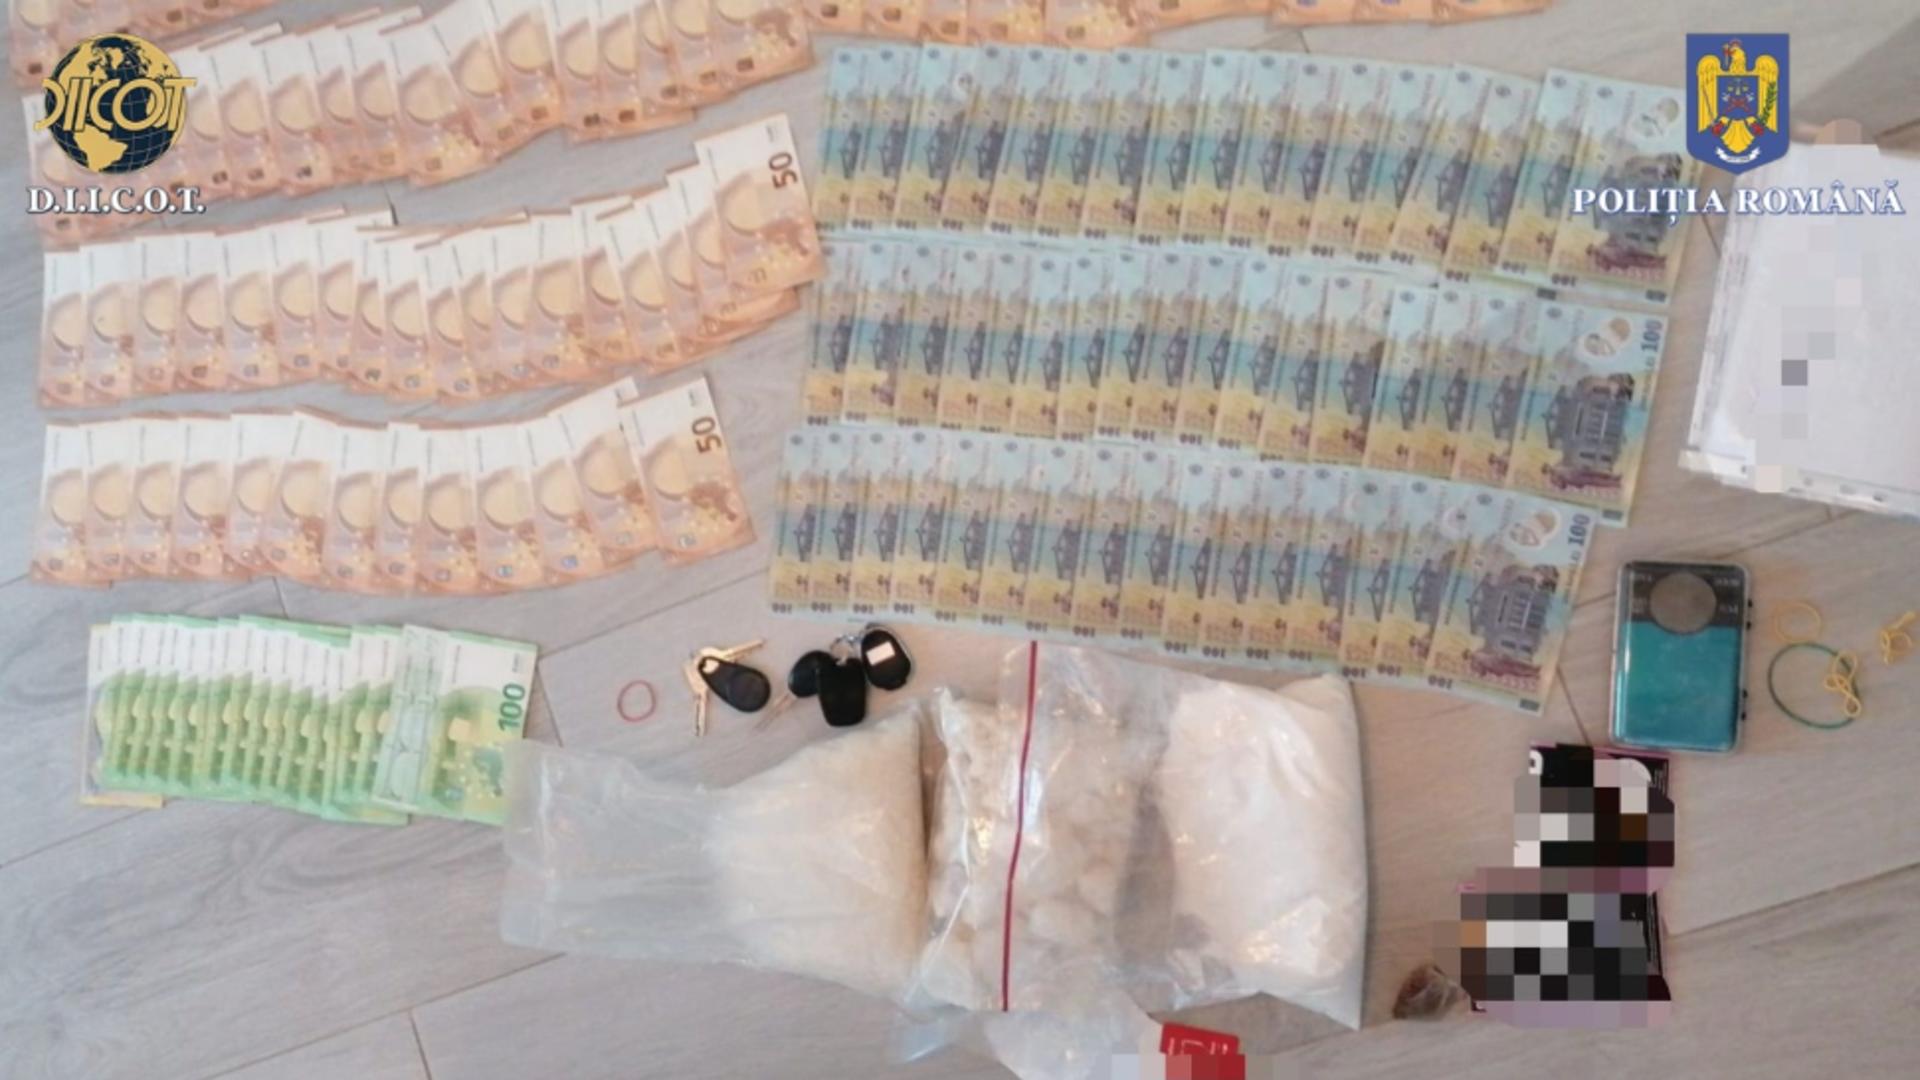 Peste două kilograme de droguri de mare risc, descoperite în urma unei percheziţii domiciliare în Mamaia Nord! O persoană a fost reținută